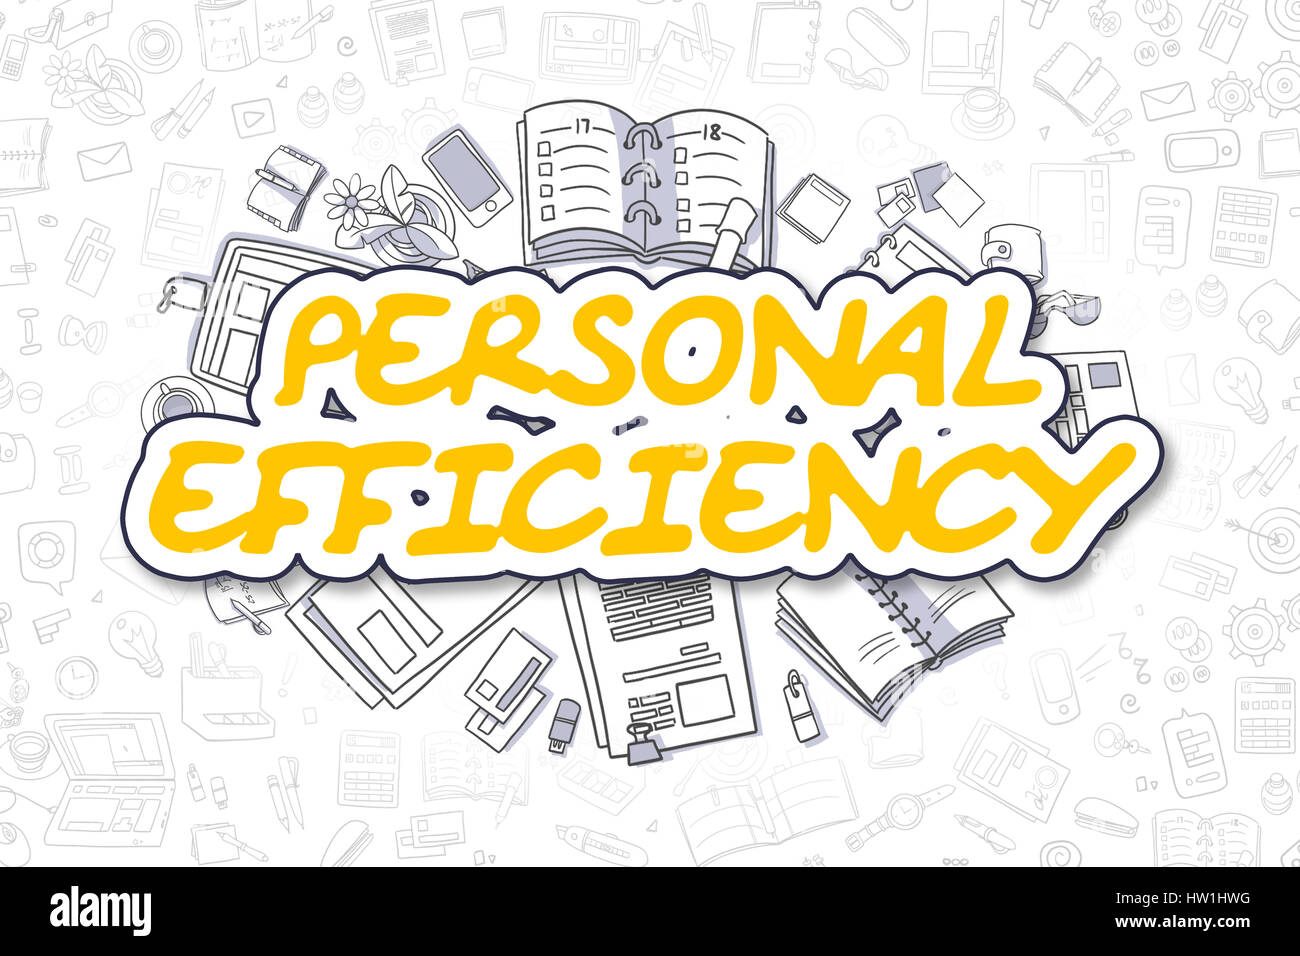 L'efficacité personnelle - Doodle texte jaune. Concept d'entreprise. Banque D'Images